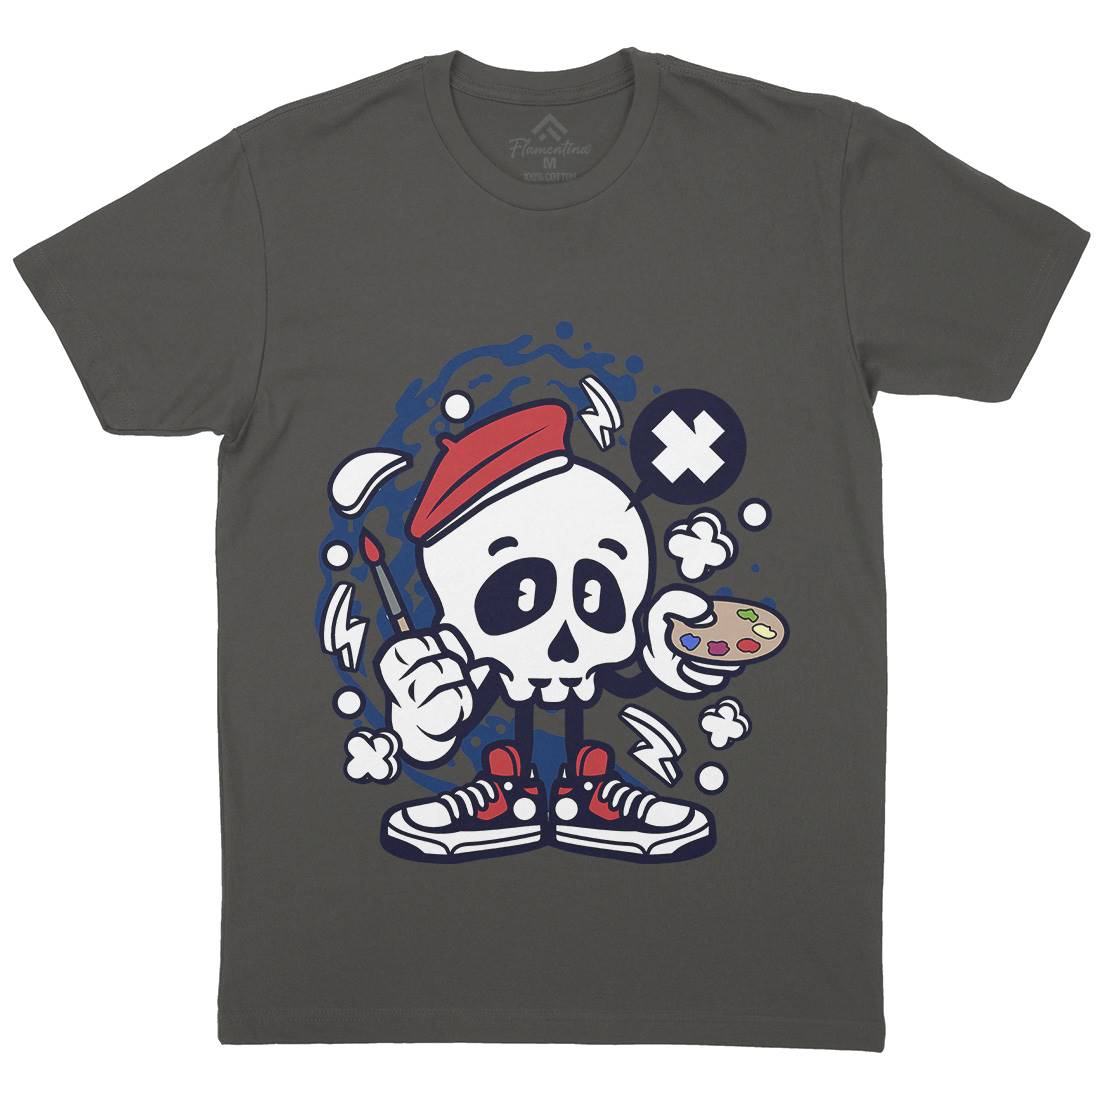 Painter Skull Mens Crew Neck T-Shirt Retro C183